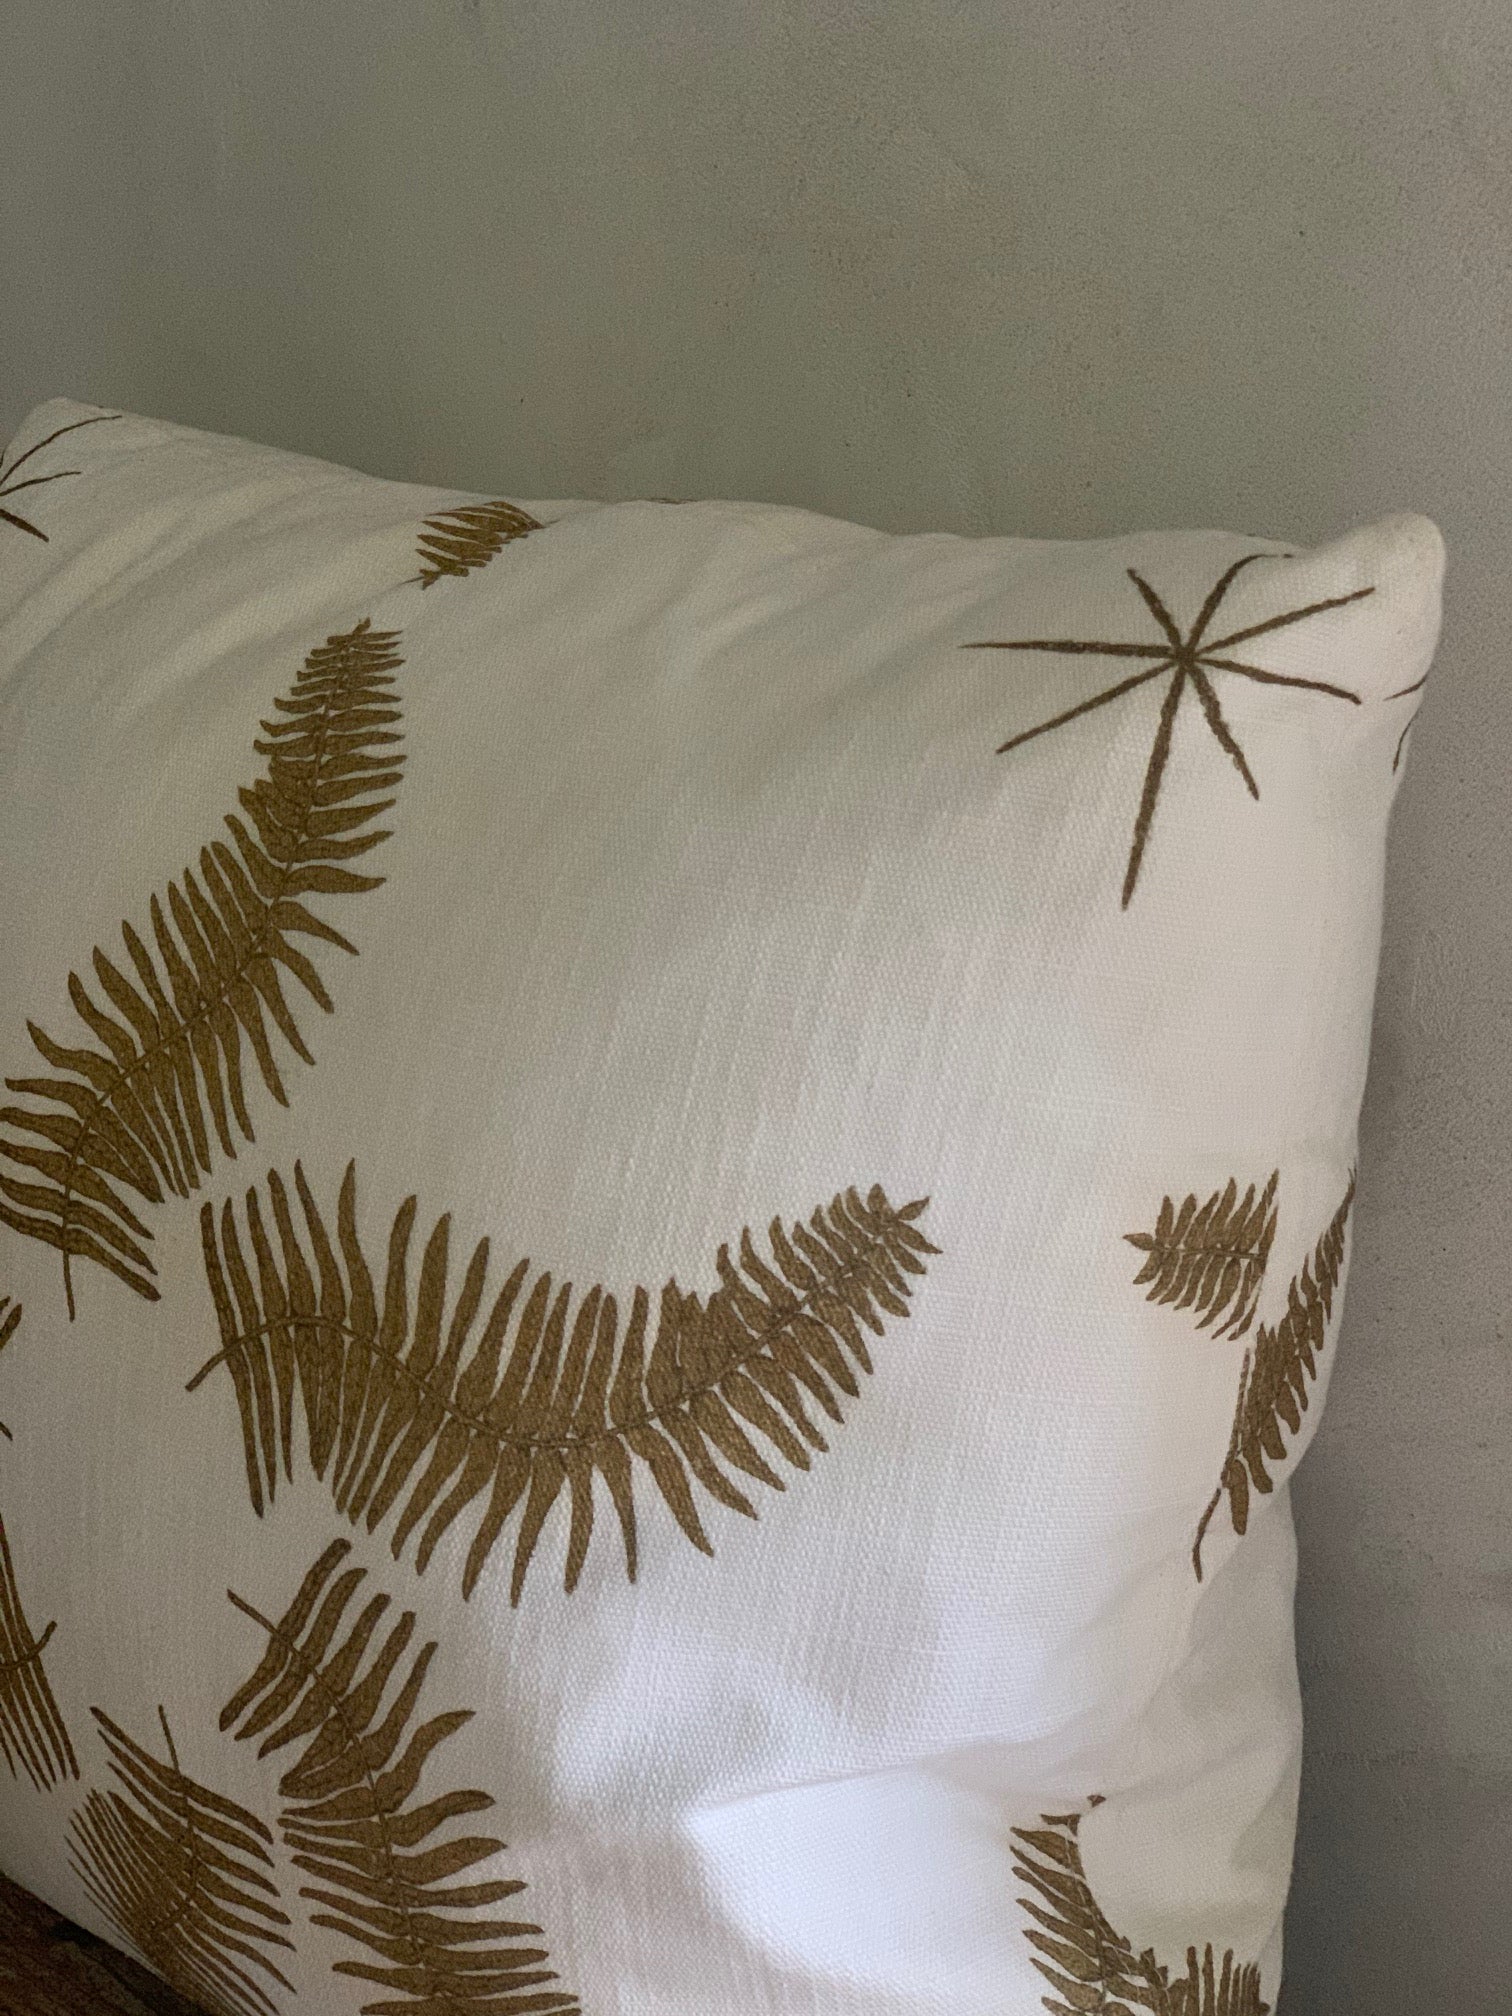 LL textiles  "fern star" pillow